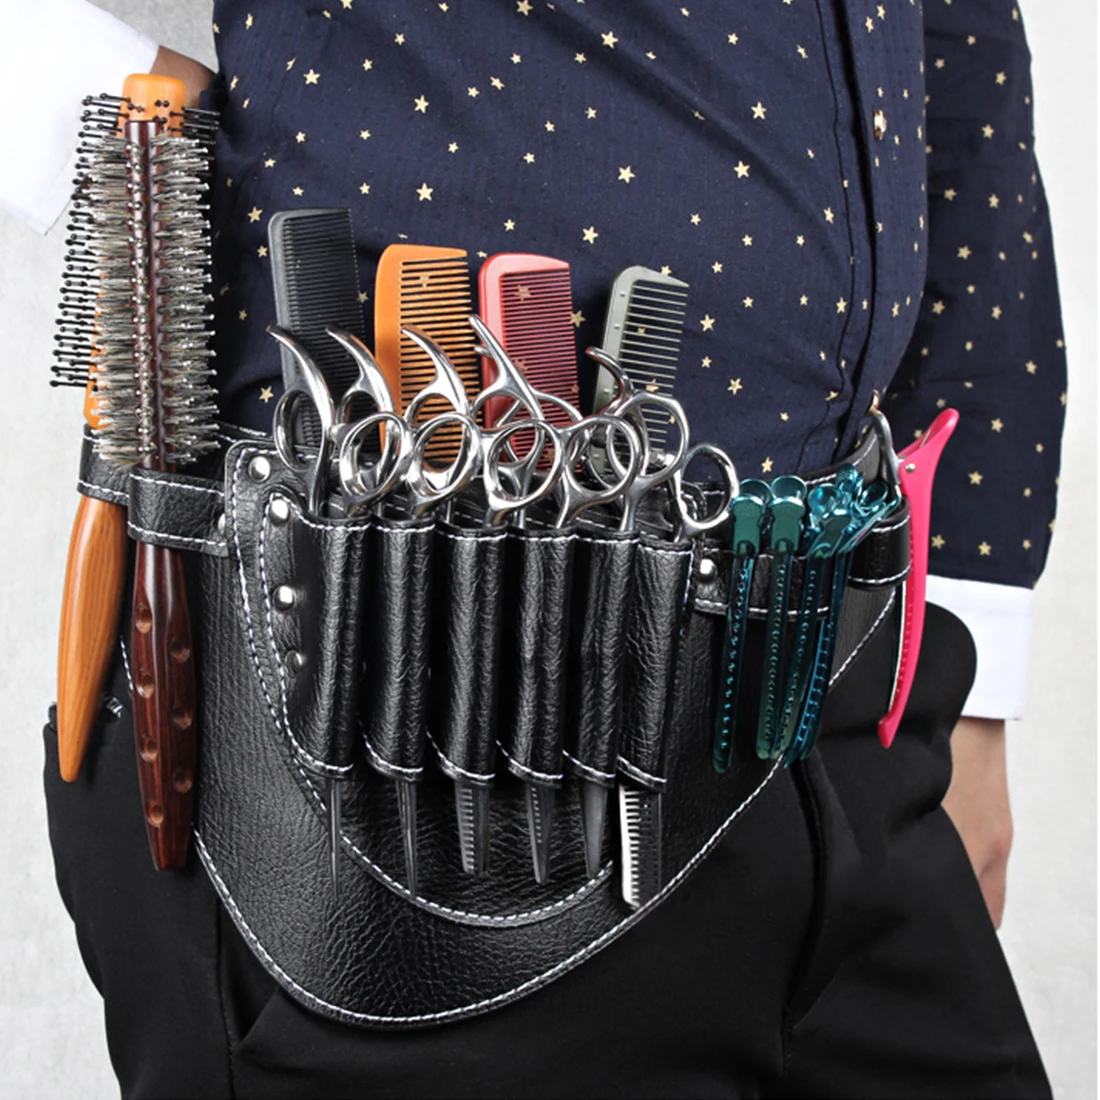 Парикмахерский салонный инструмент ножницы зажимы расчески подставка из искусственной кожи сумка для парикмахерской чехол для кобуры с